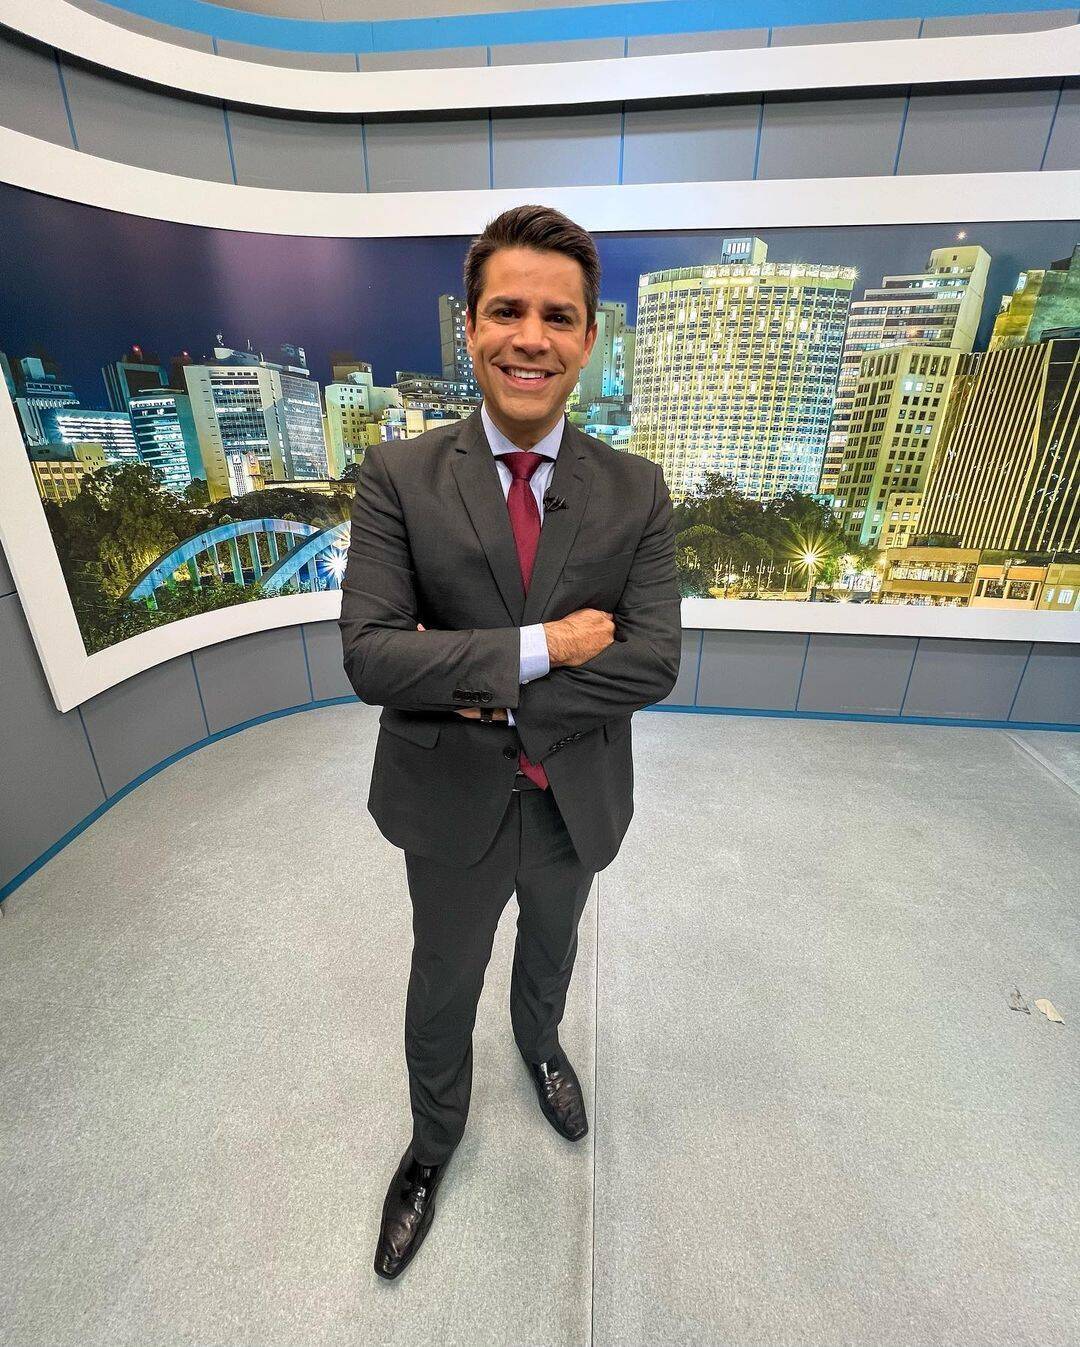 O Dono do Lar reforça elenco em nova temporada no Multishow - Prisma - R7  Flavio Ricco